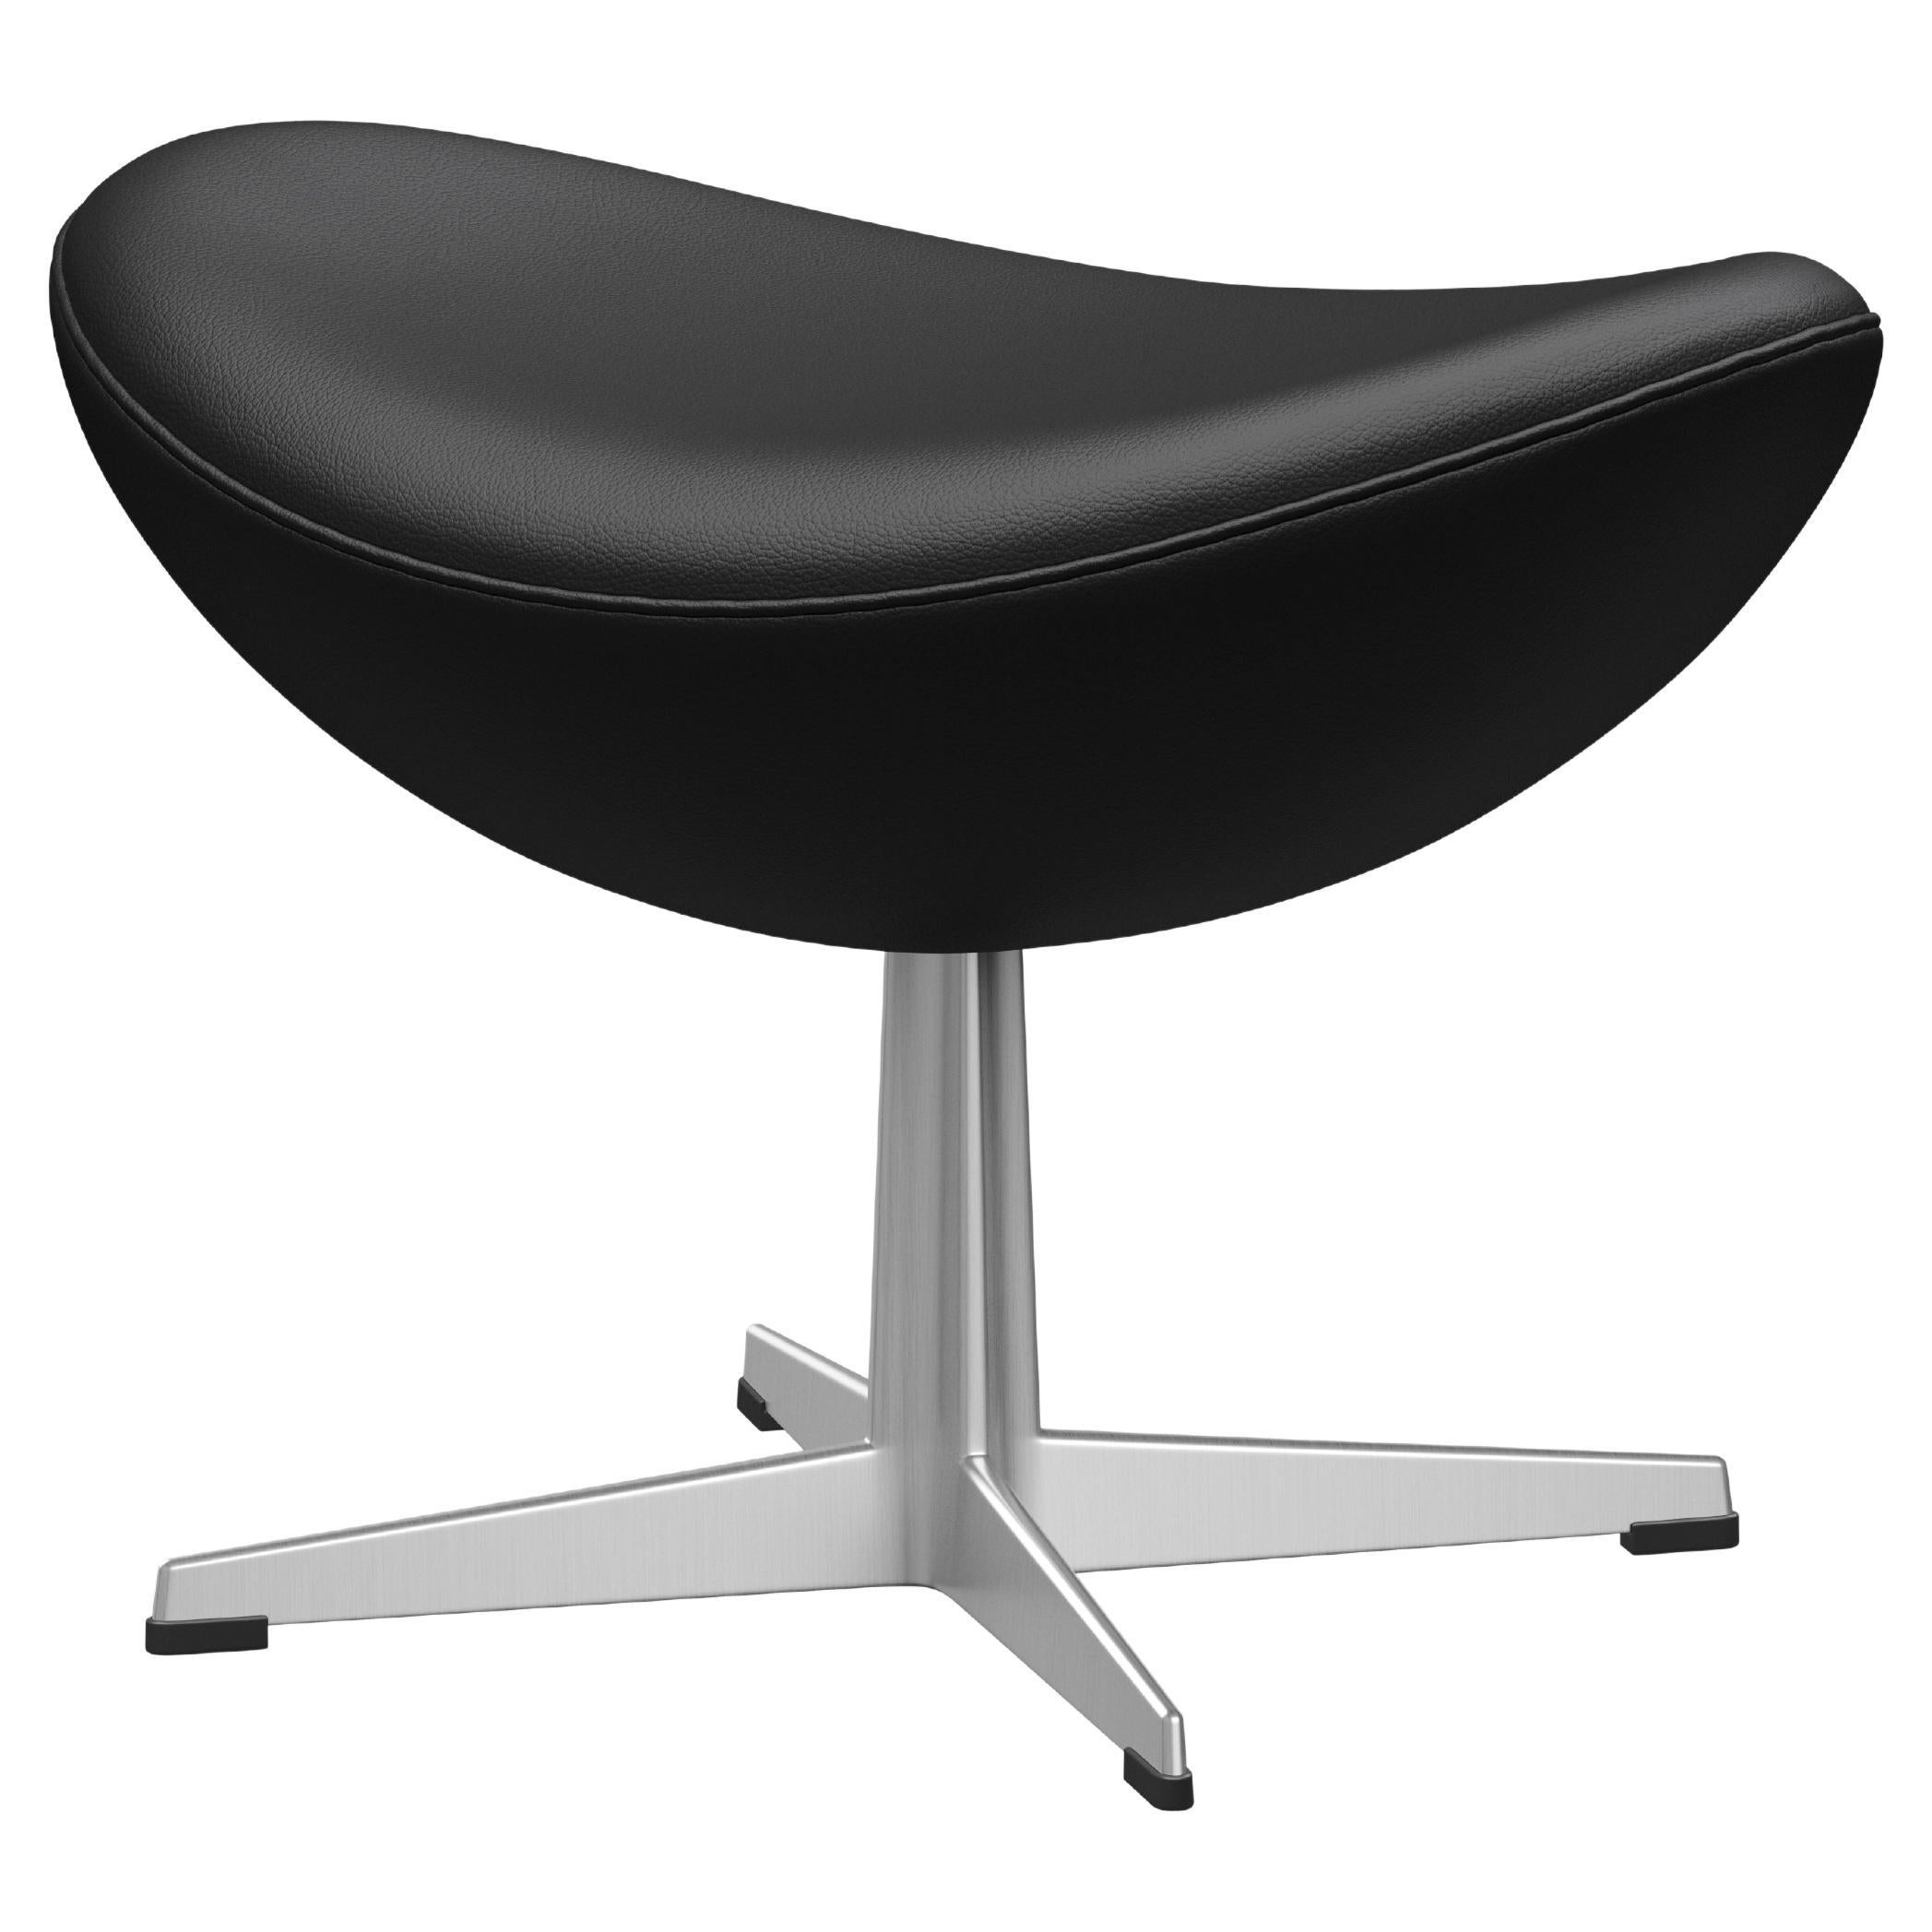 Arne Jacobsen 'Egg' Footstool for Fritz Hansen in Leather Upholstery (Cat. 4) For Sale